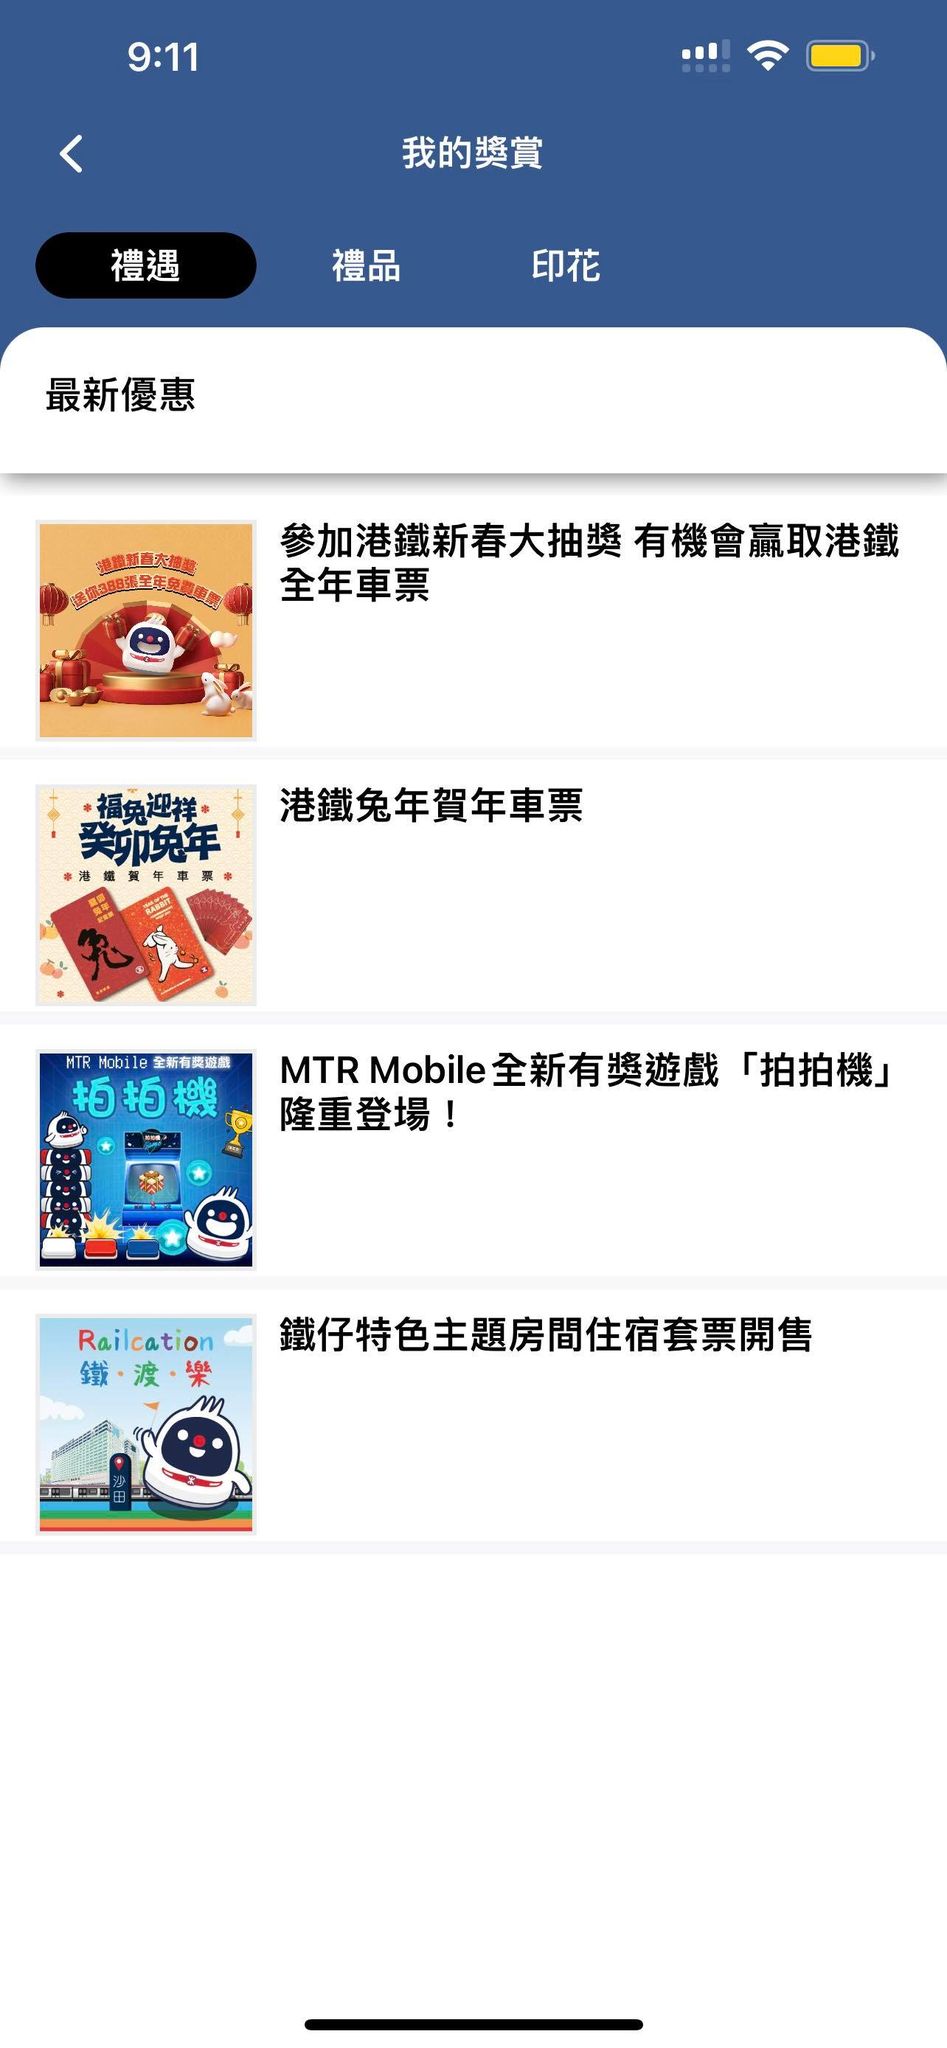 在活動期內到「我的獎賞」進入活動頁面即可參加抽獎。MTR Mobile 截圖